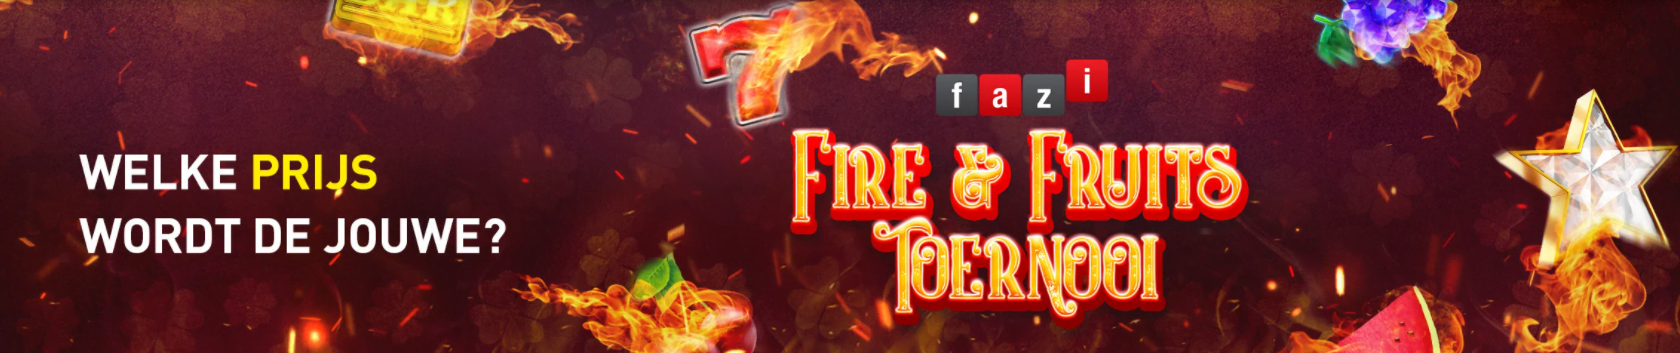 Fazi Fire & Fruits toernooi Casino 777 online speelhal 2022 Jackpot Coins Geldkluis Slots games spellen